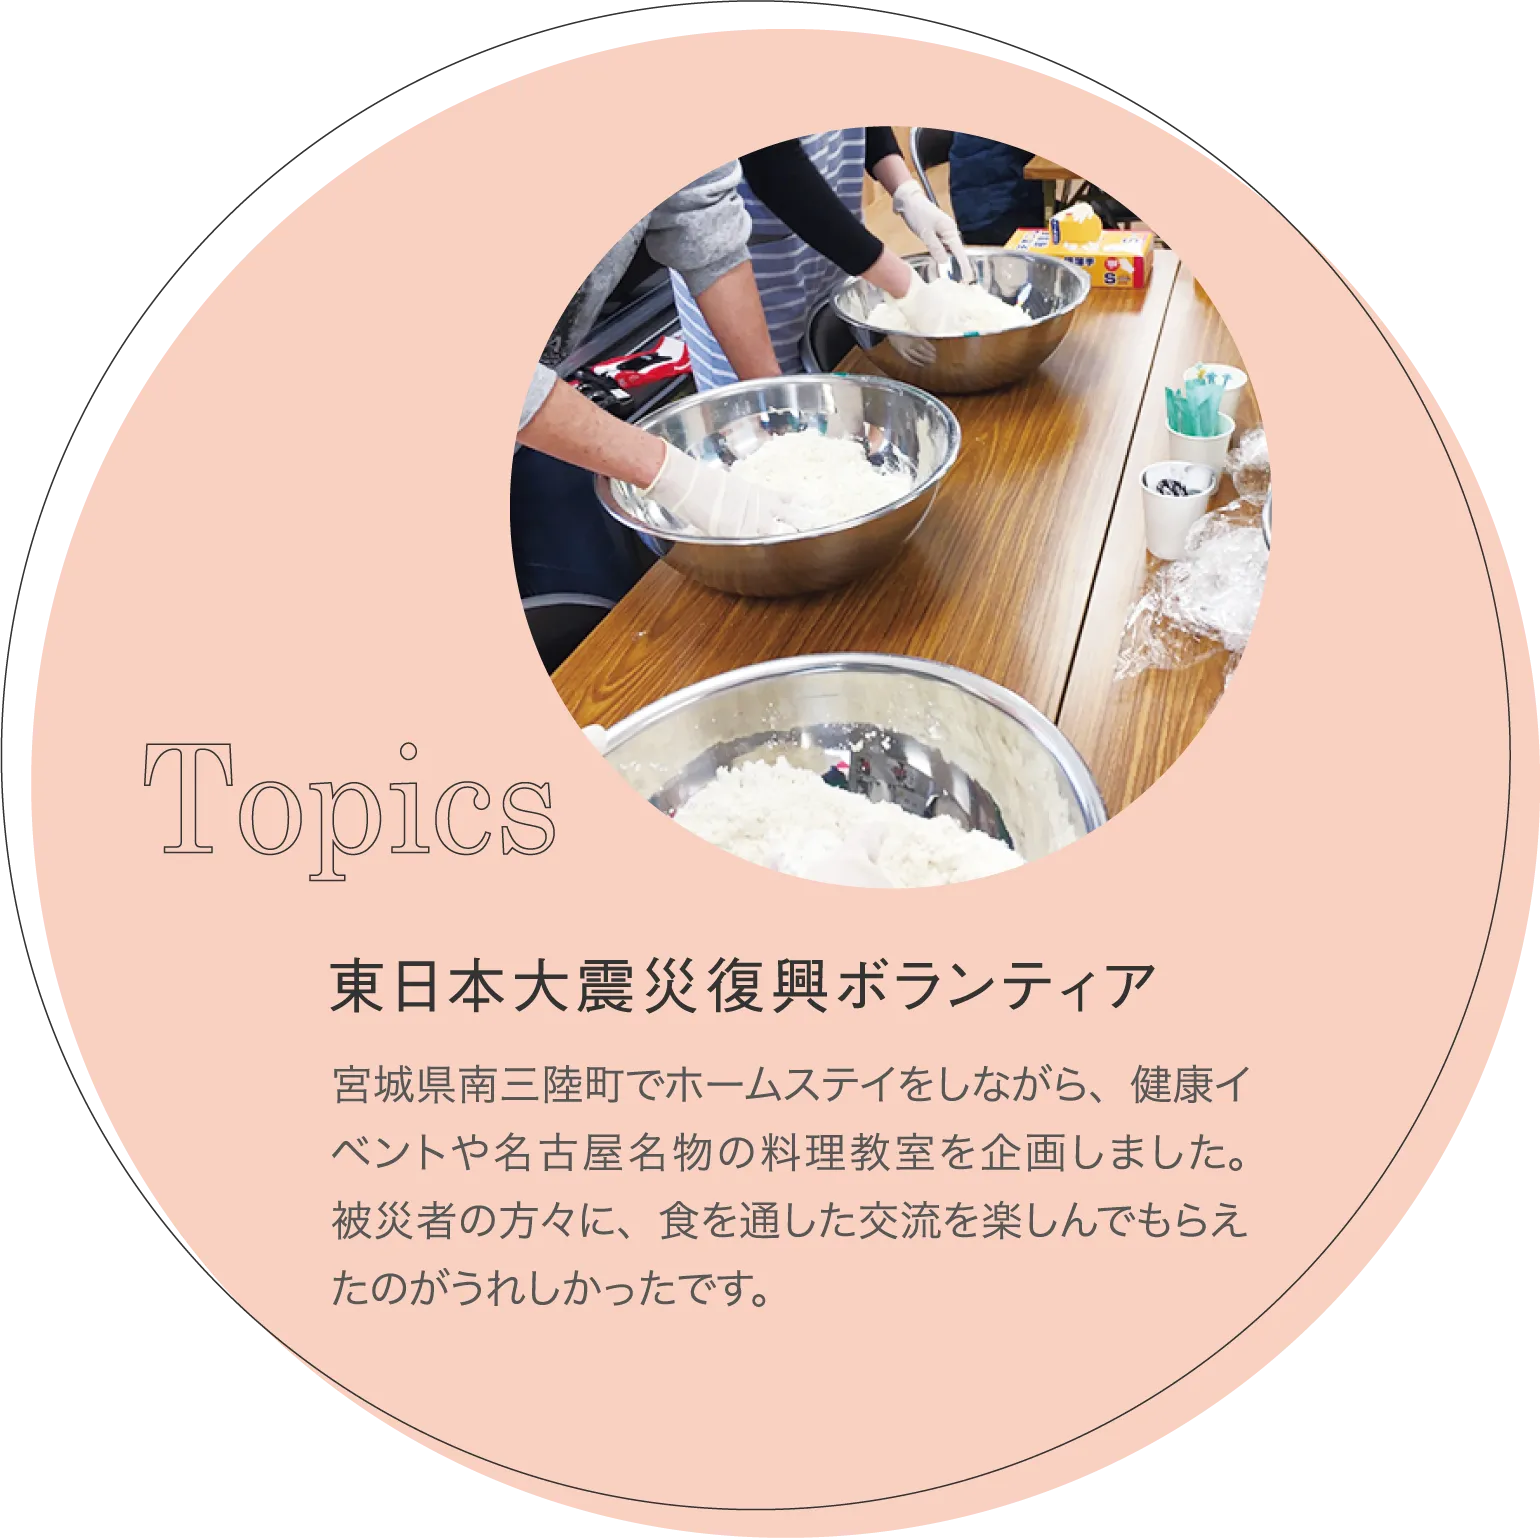 東日本大震災復興ボランティア 宮城県南三陸町でホームステイをしながら、健康イベントや名古屋名物の料理教室を企画しました。被災者の方々に、食を通した交流を楽しんでもらえたのがうれしかったです。